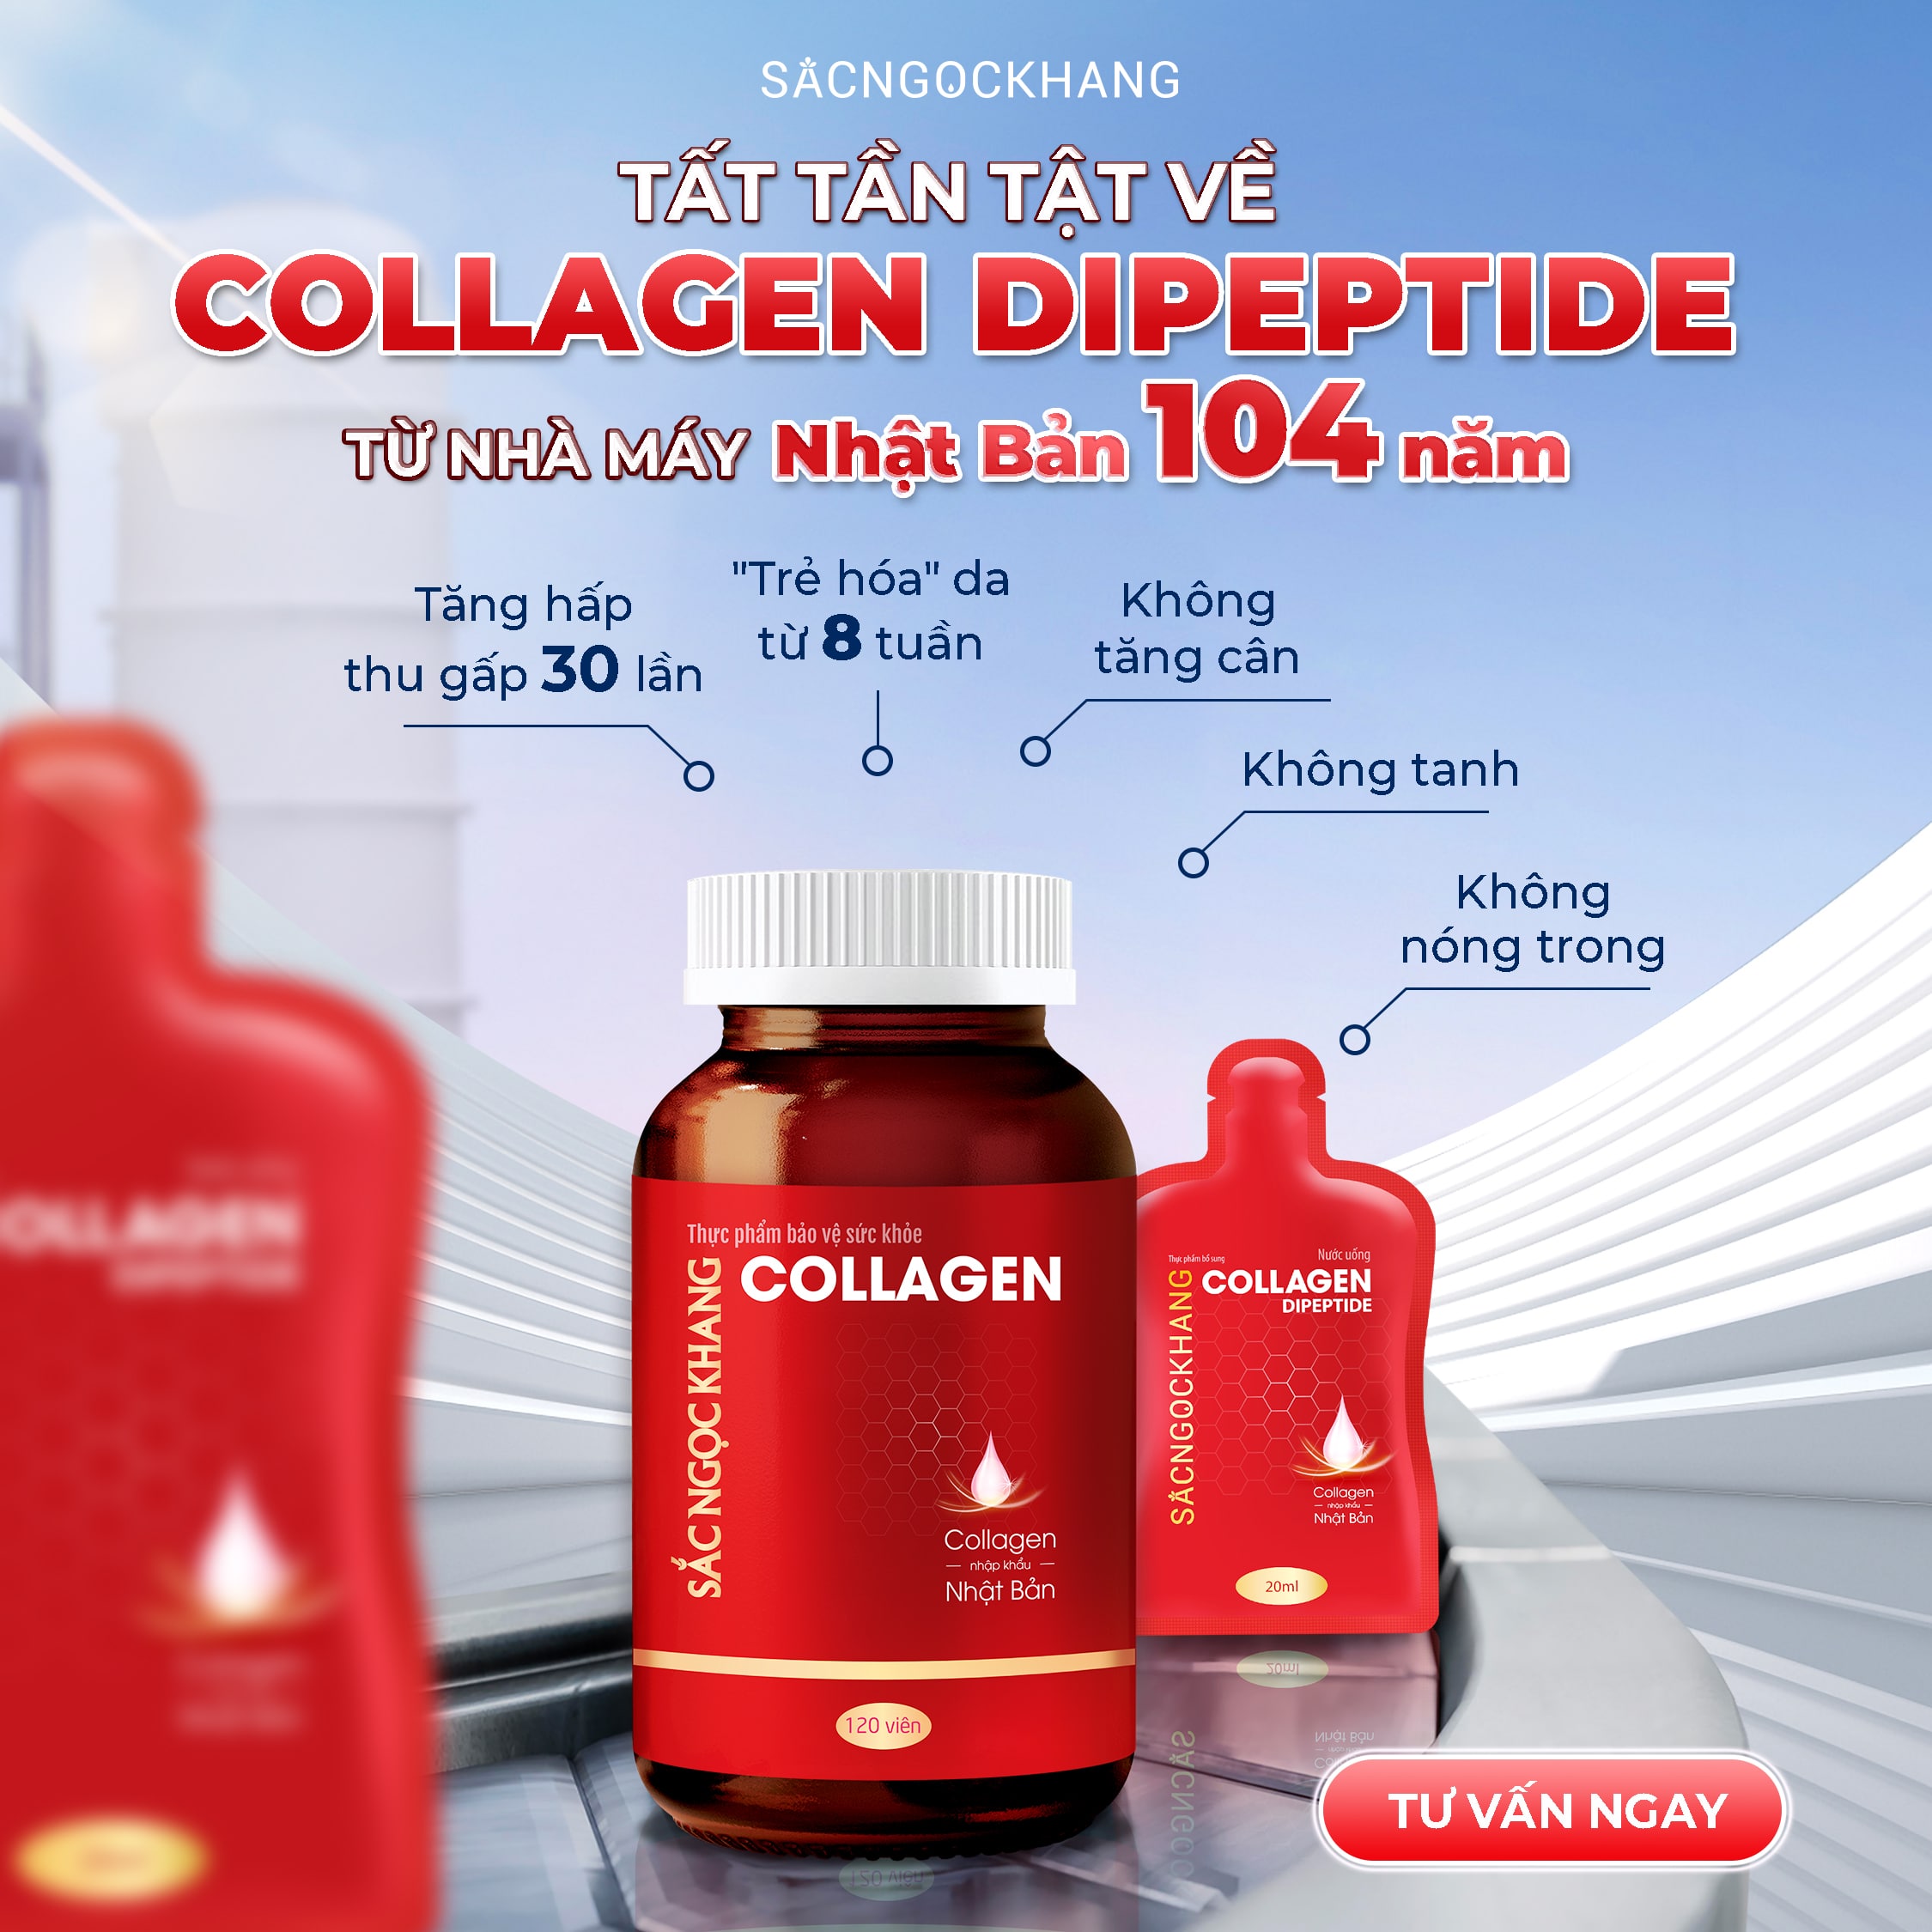 Collagen Dipeptide Sắc Ngọc Khang - Chất lượng Nhật Bản, giá cả Việt Nam